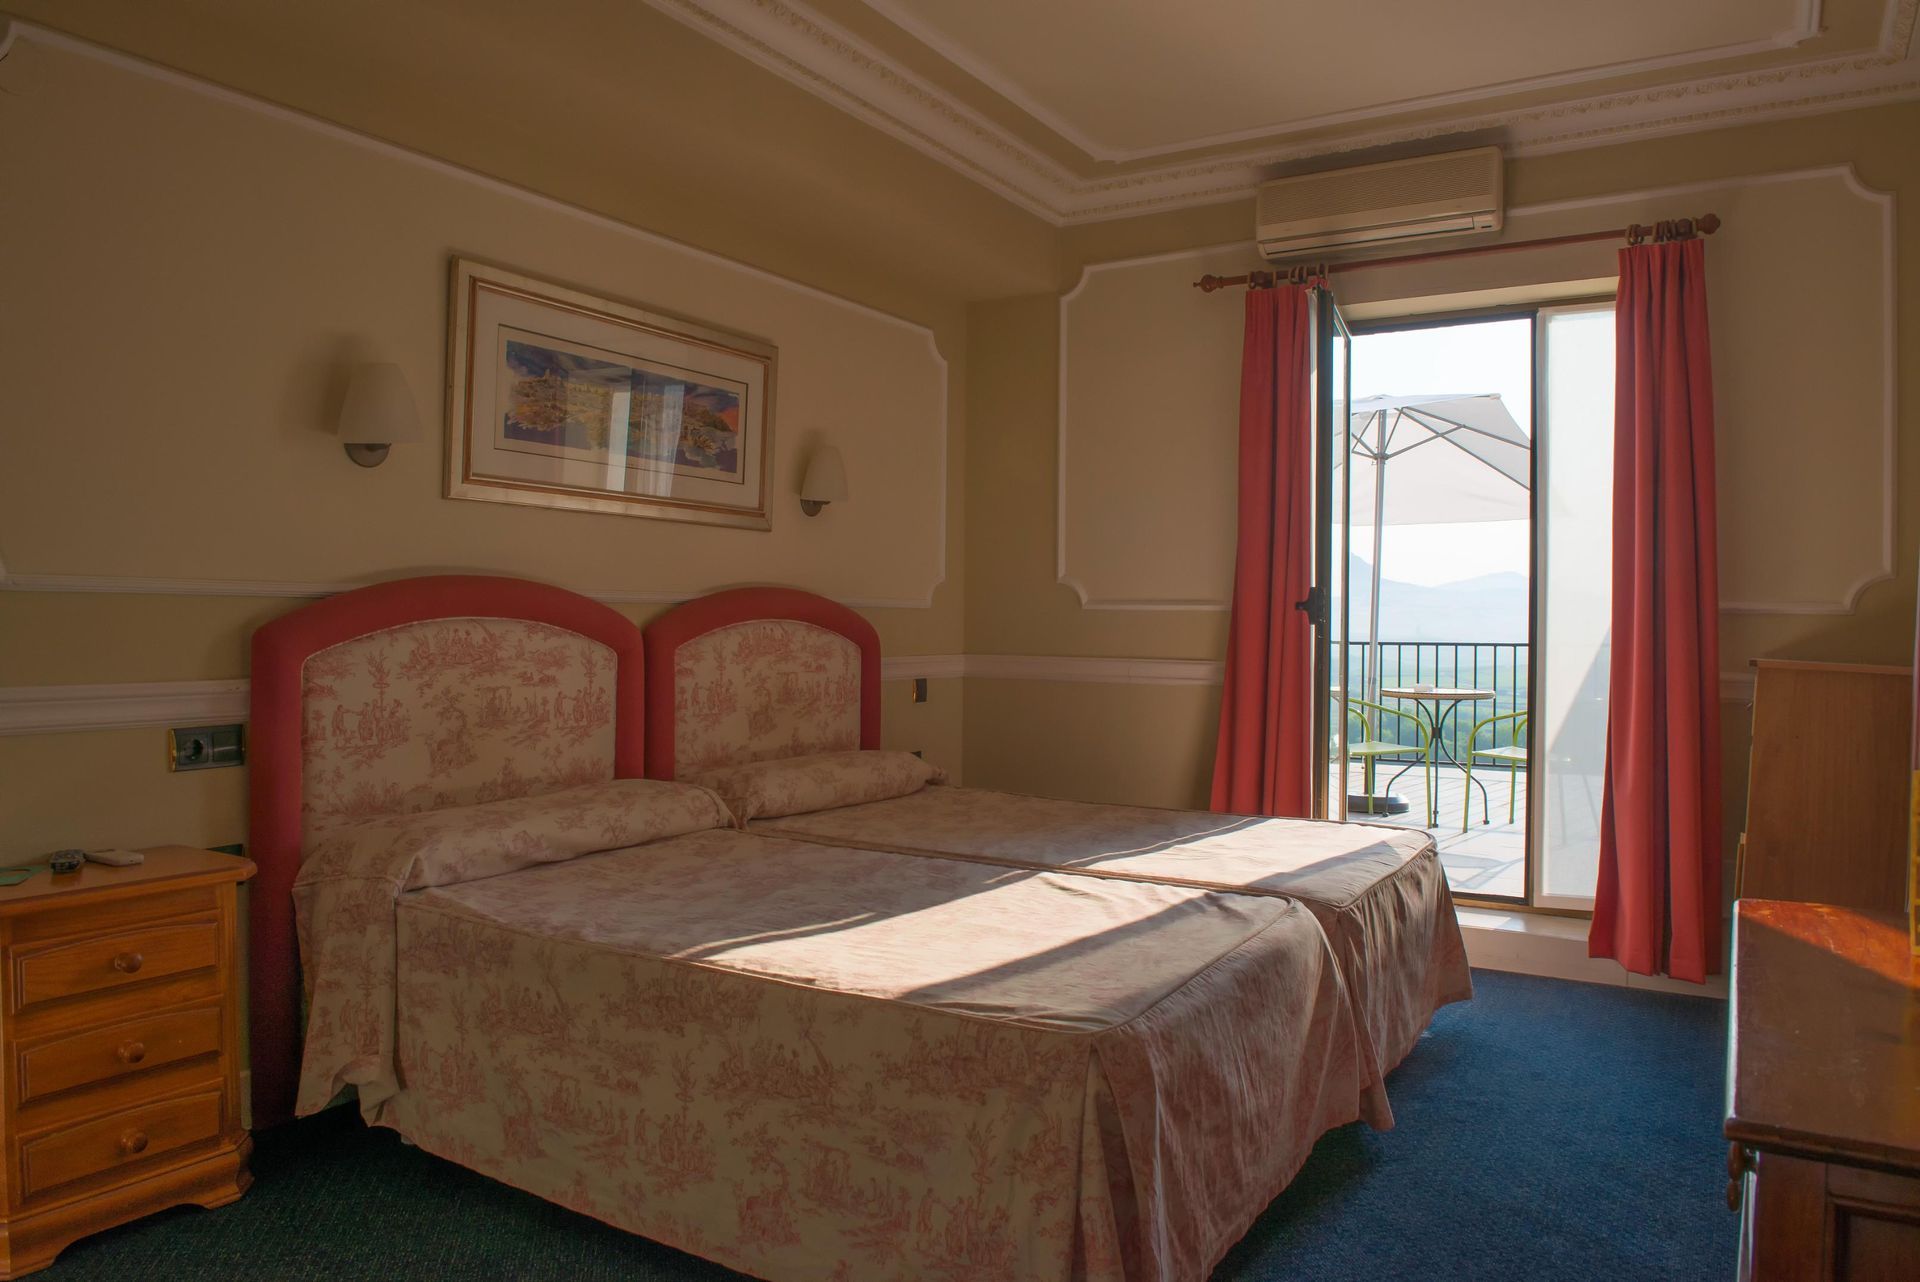 Una habitación de hotel con dos camas y balcón.